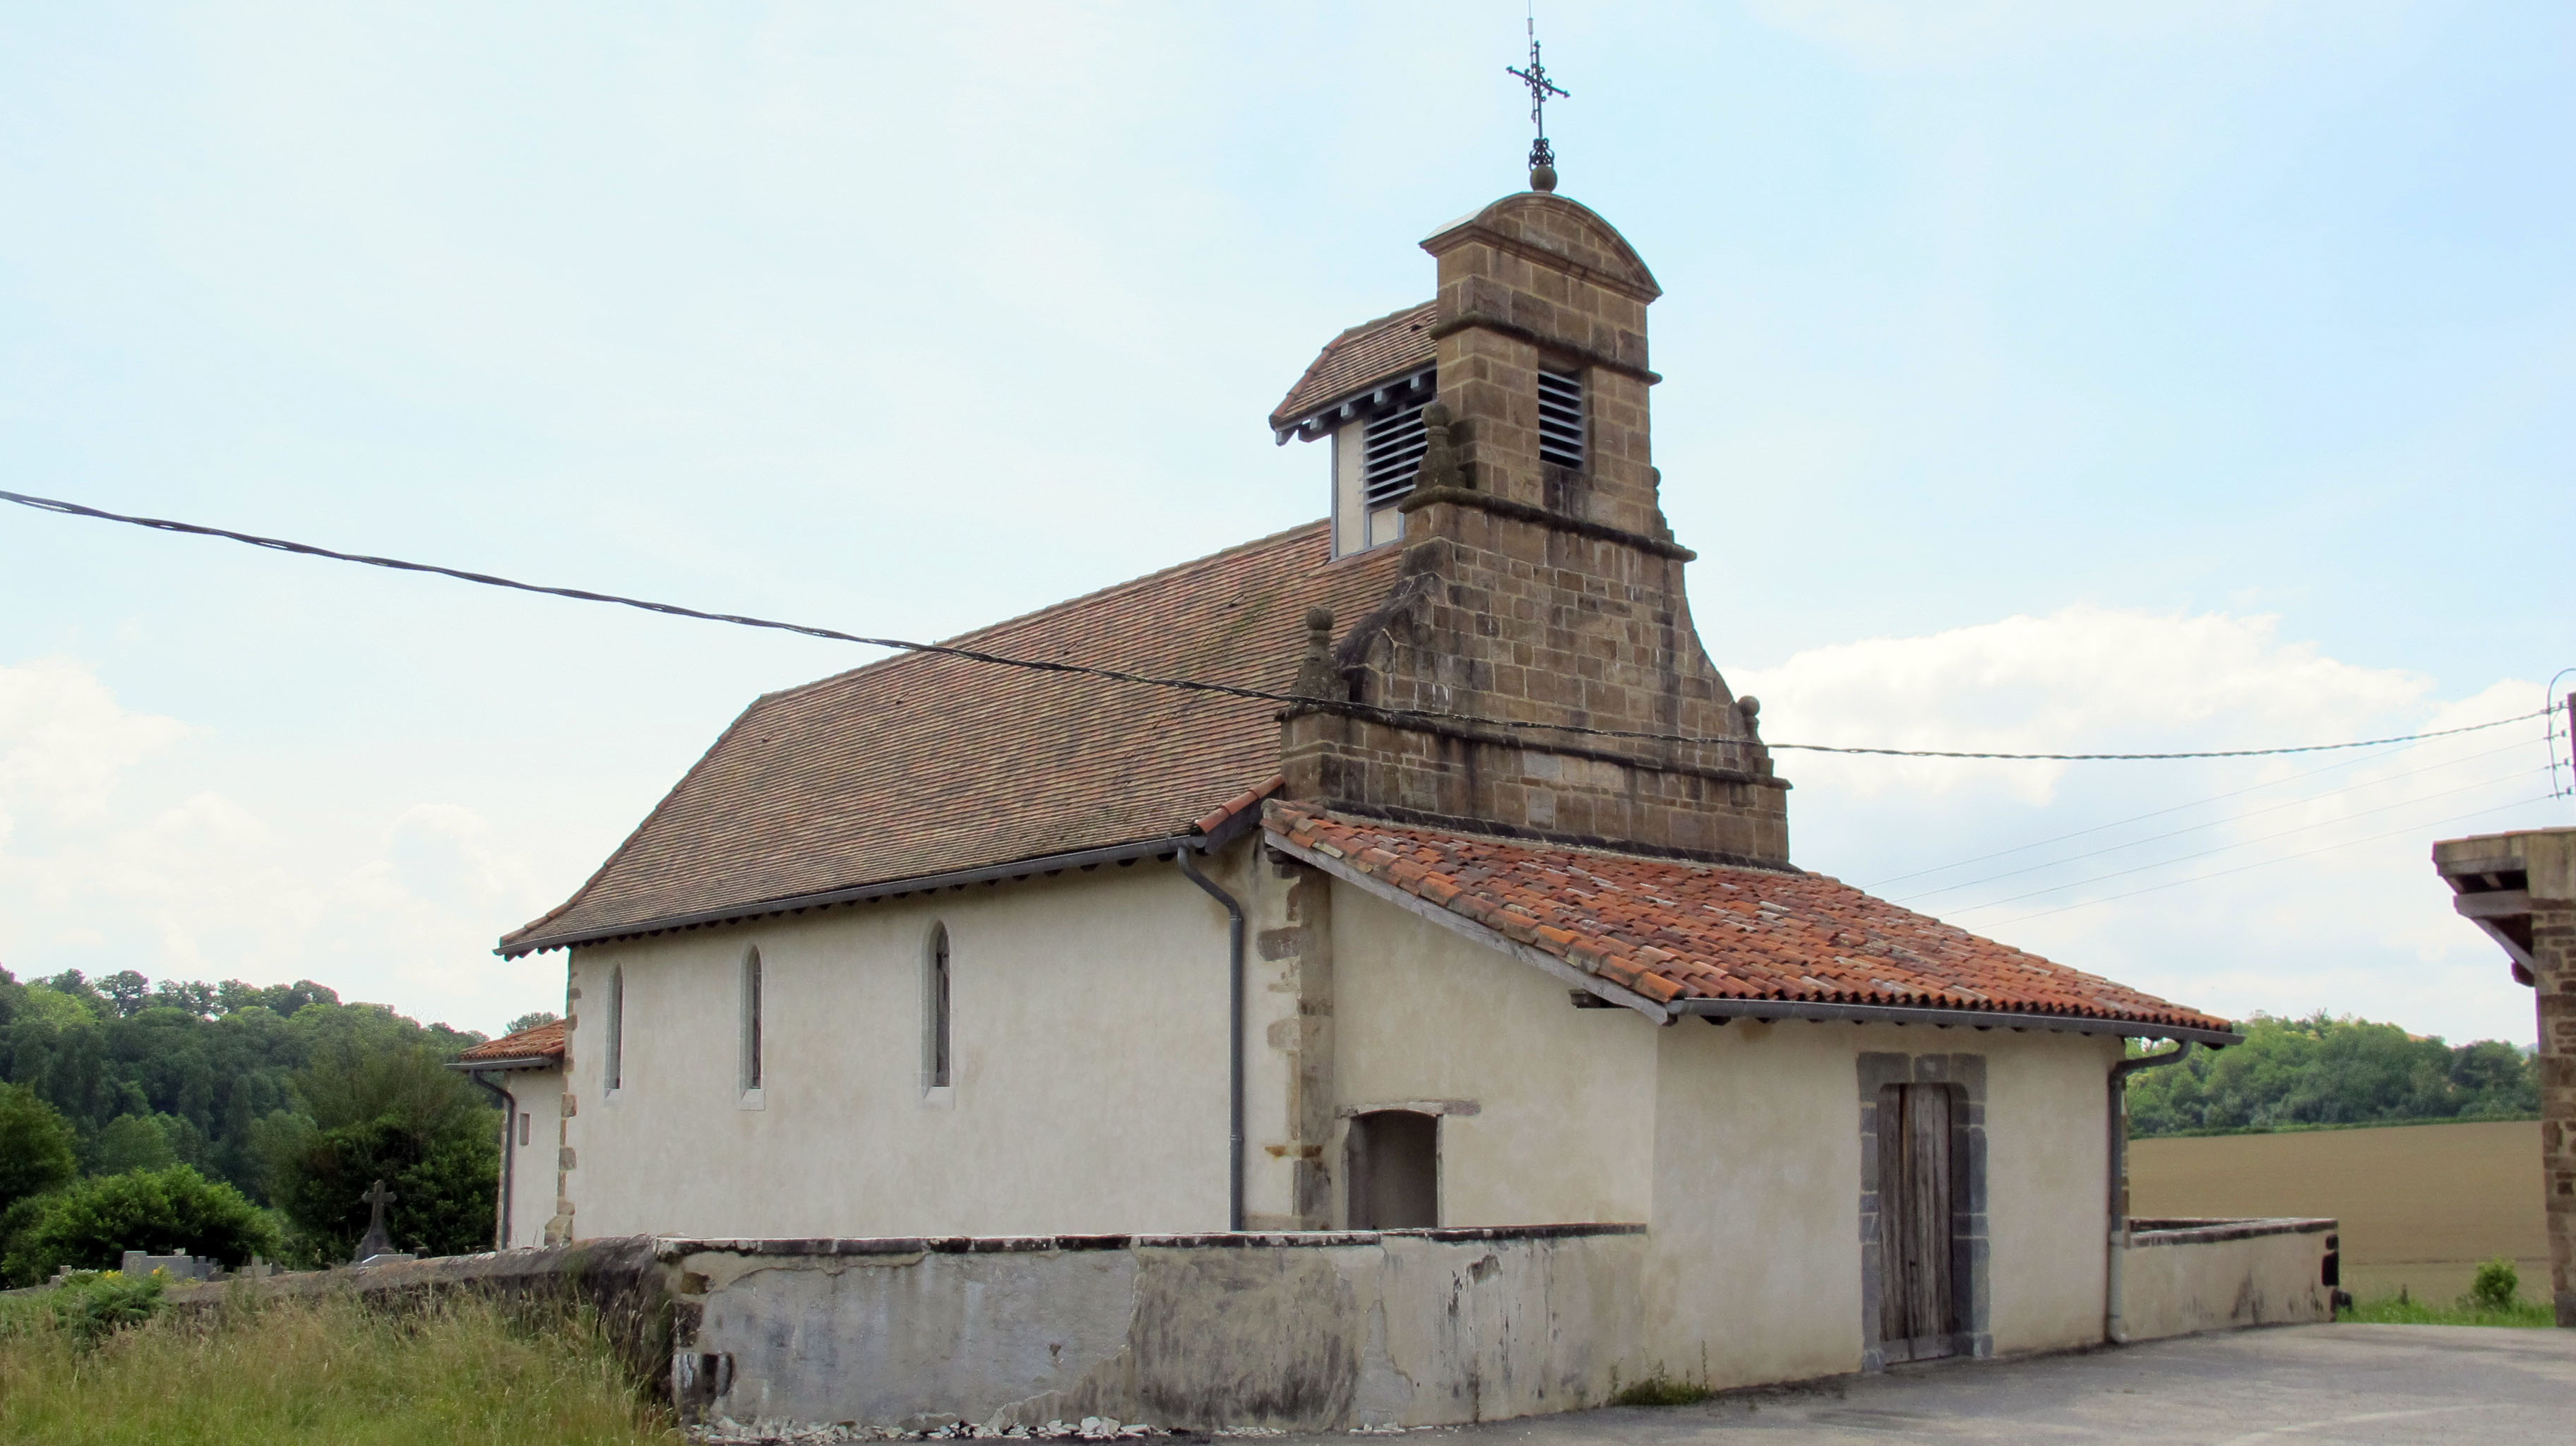 San Martin ermita, Zokotze